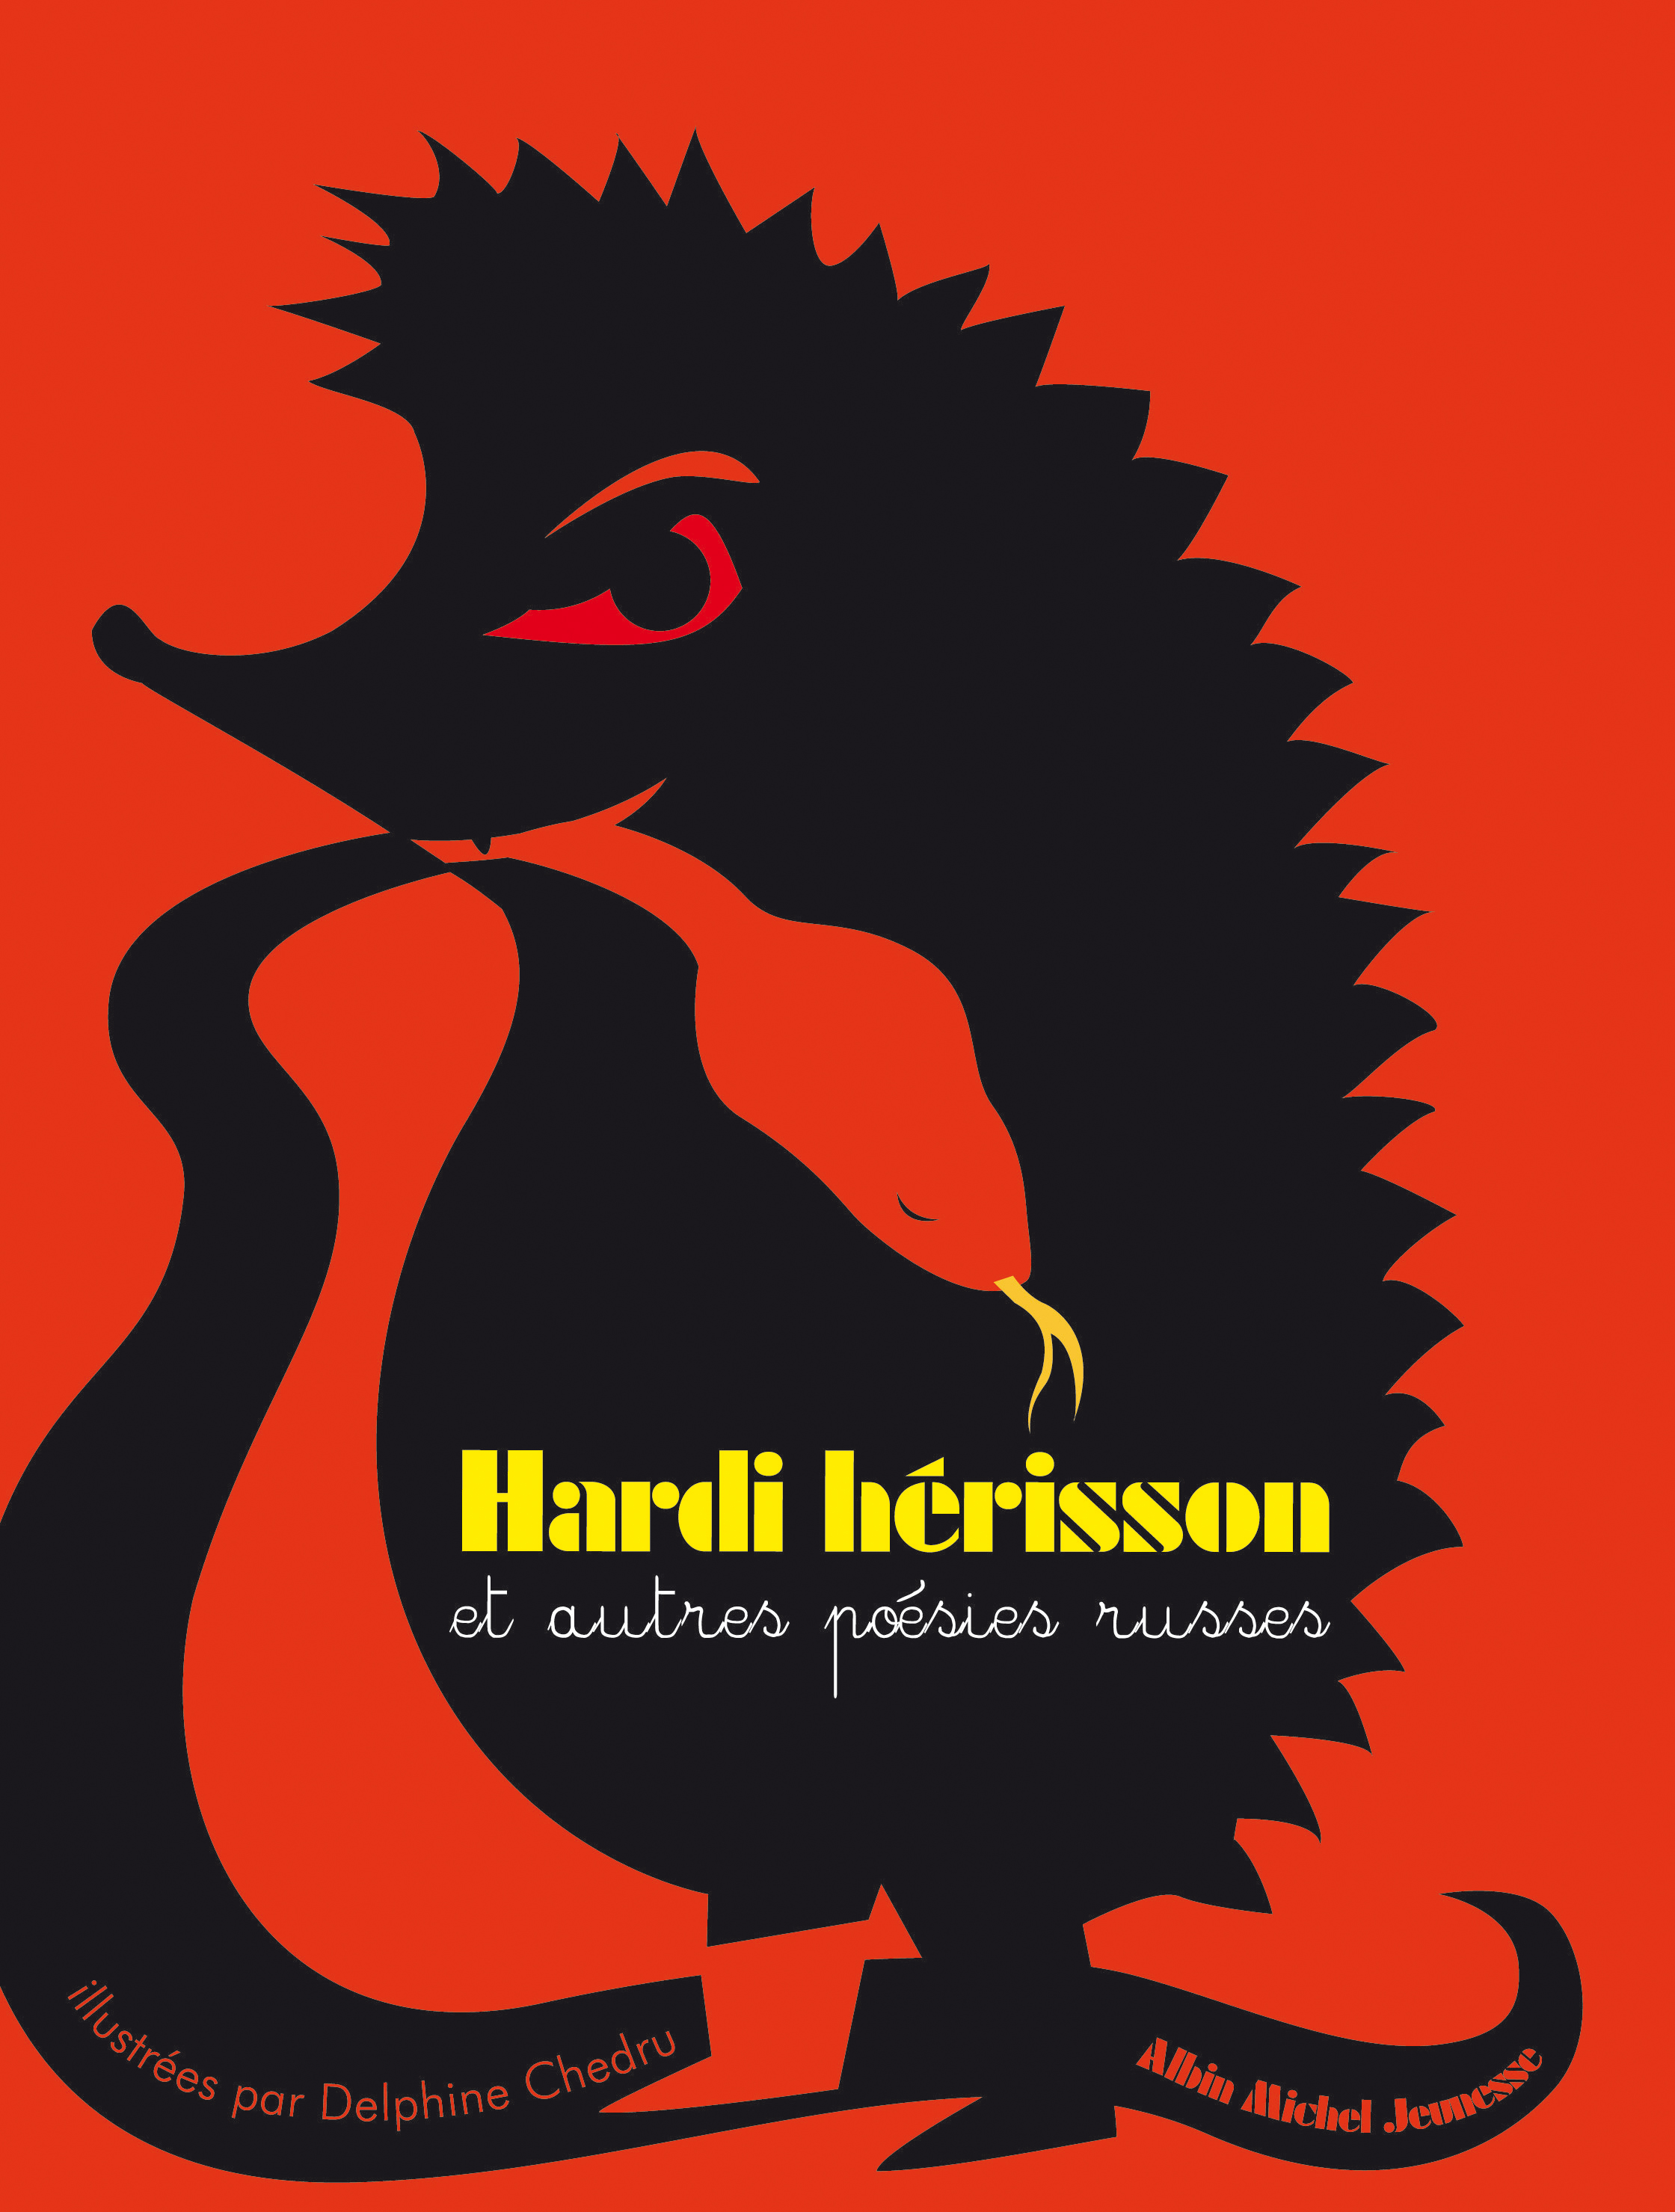 Couverture du livre Hardi hérisson et autres poésies russes